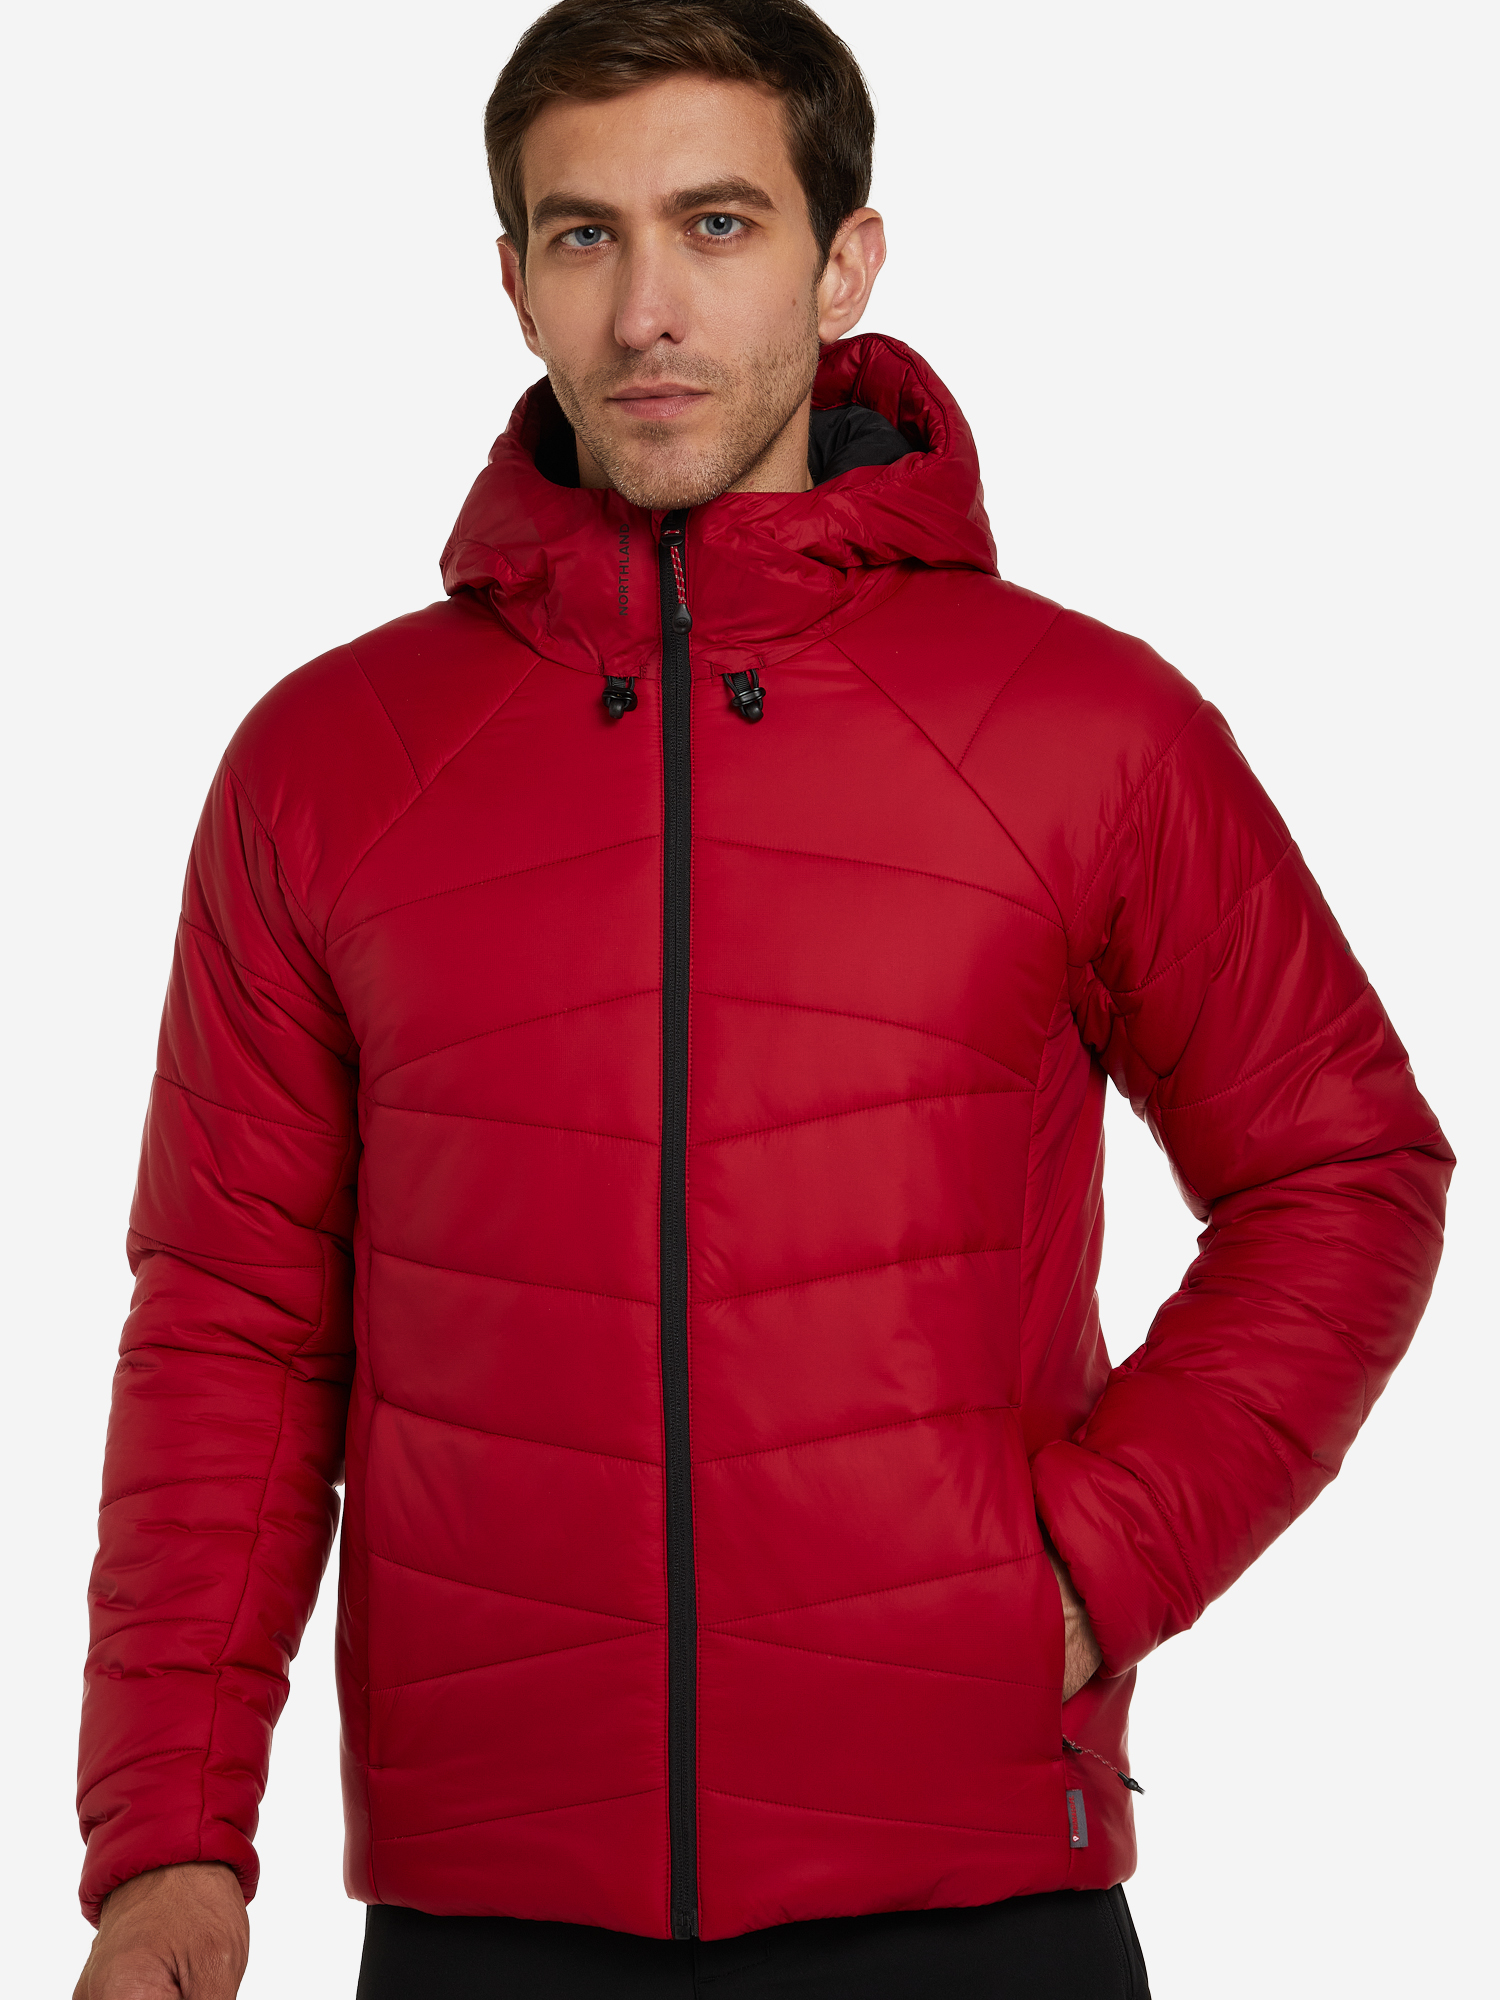 Куртка утепленная мужская Northland, Красный парка мужская northland красный